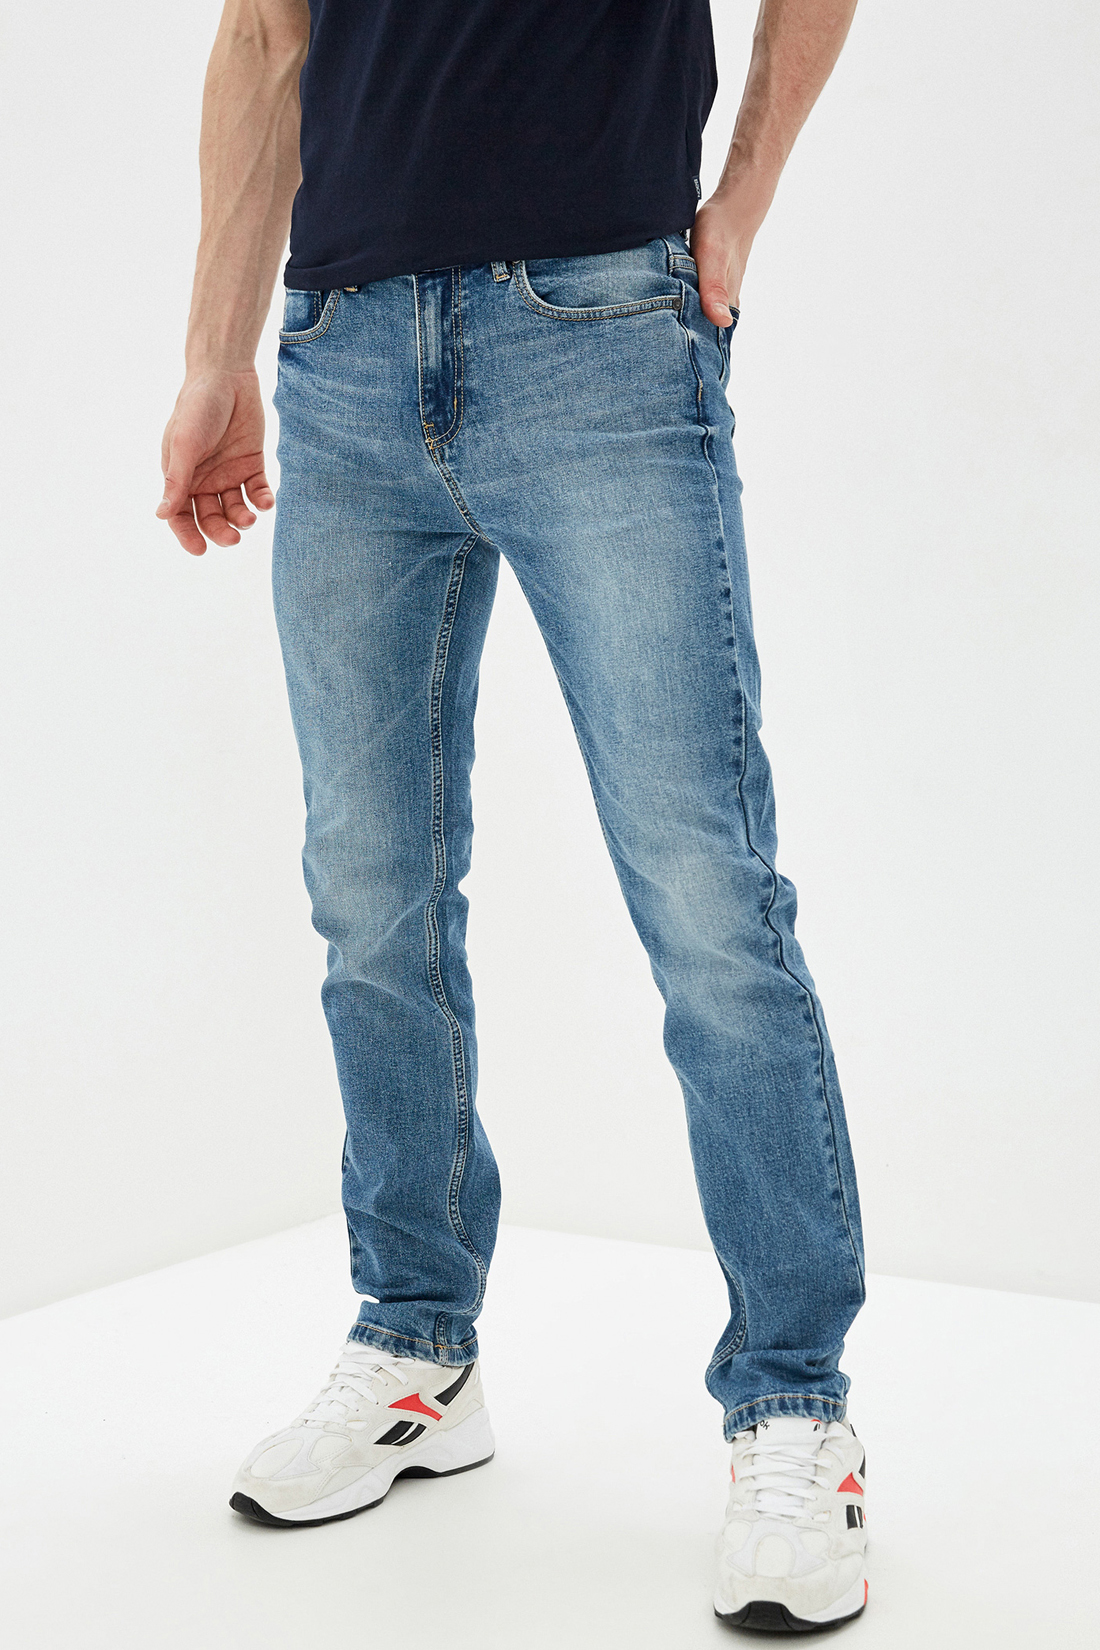 Светлые джинсы (арт. baon B800002), размер 38, цвет light blue denim#голубой